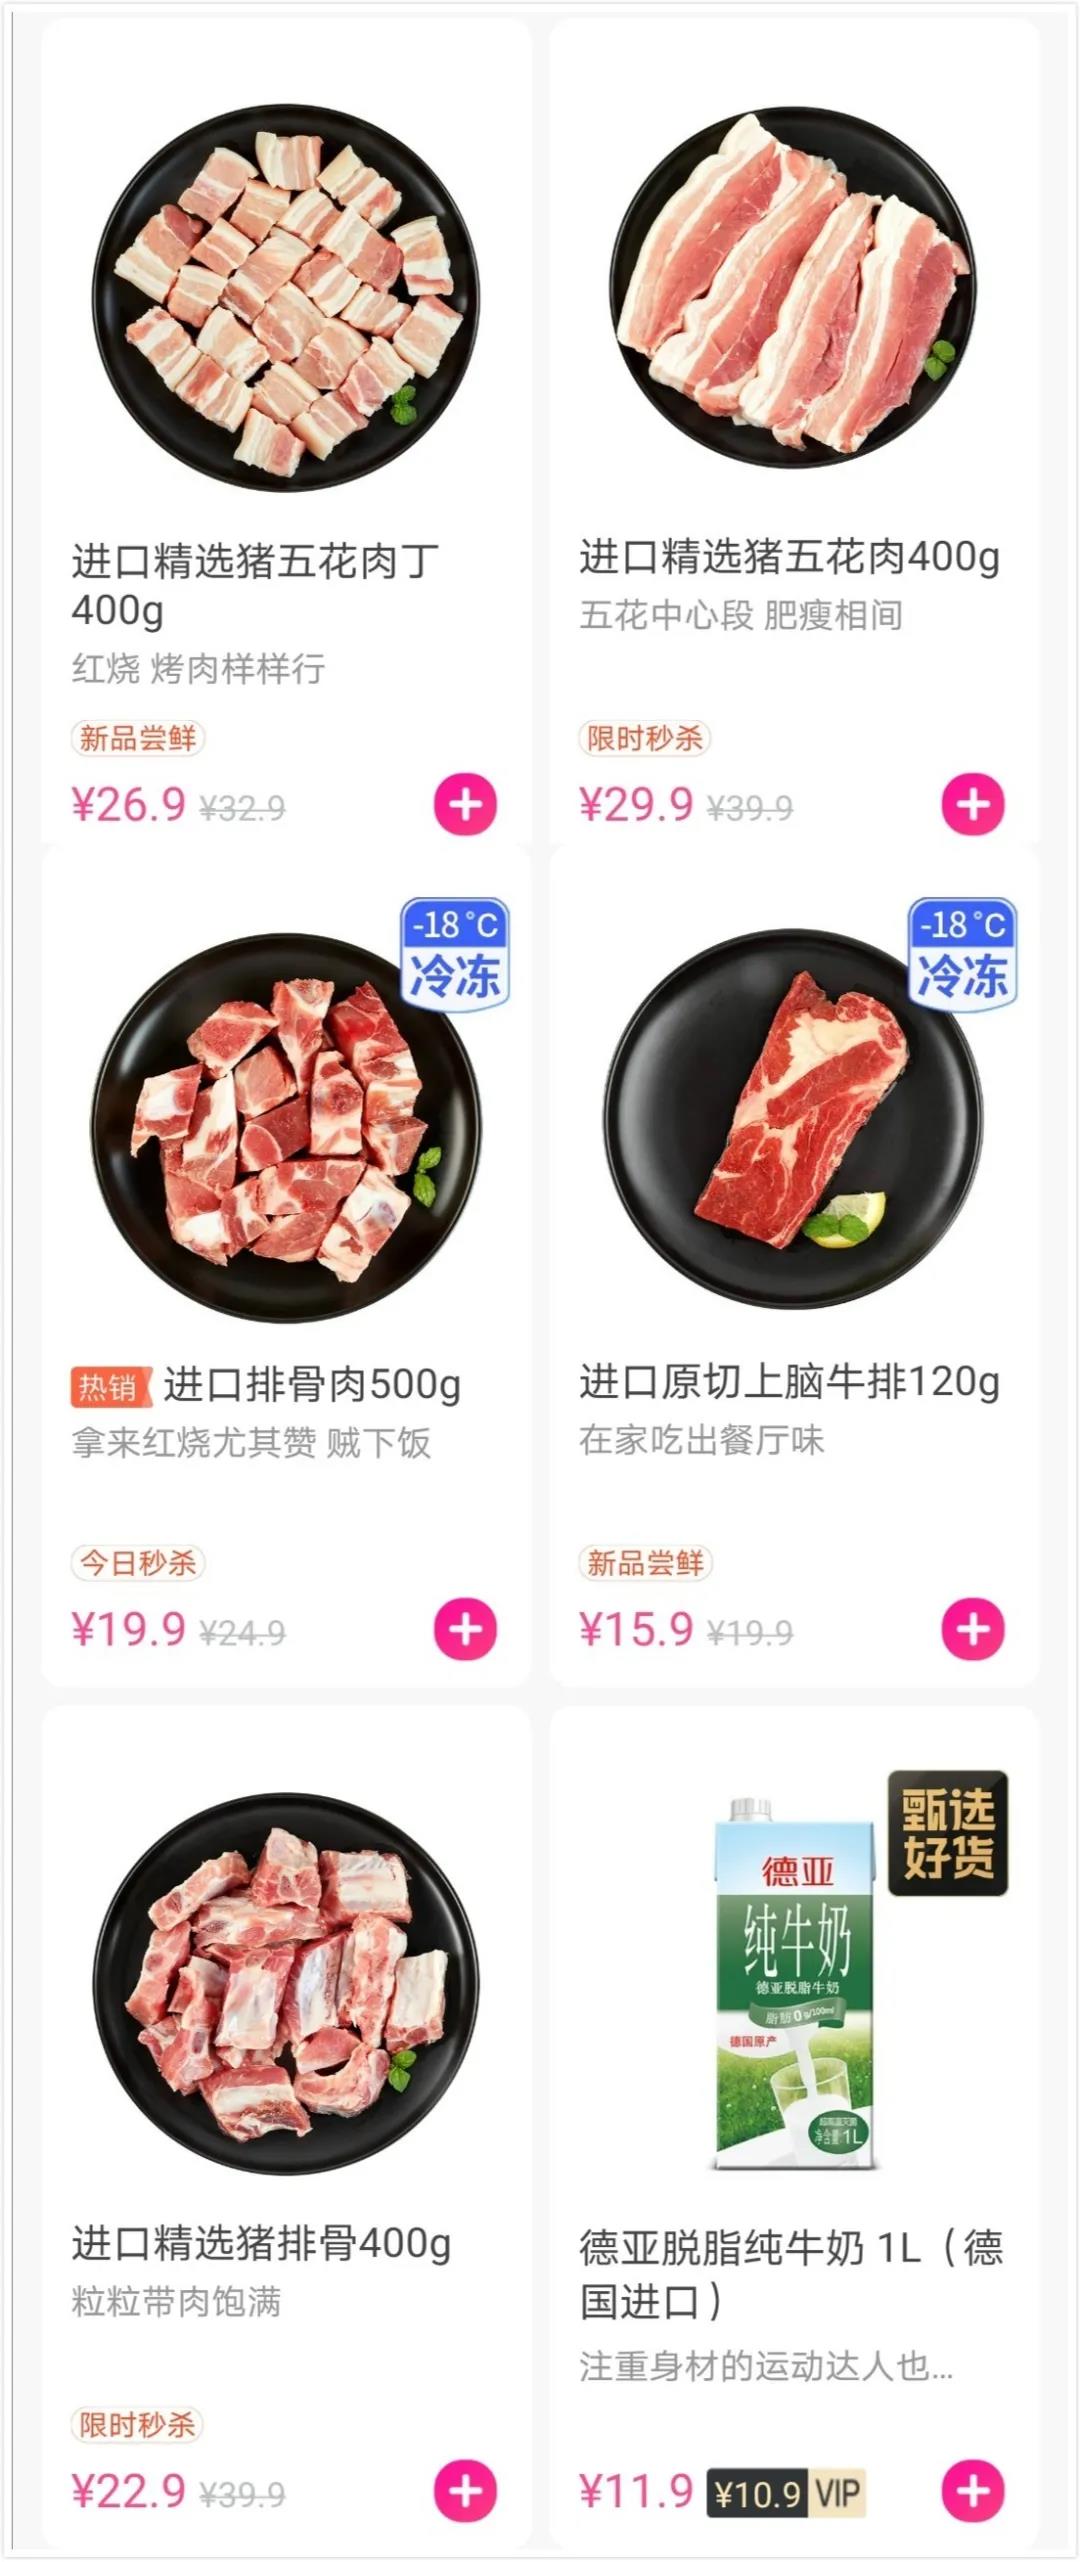 国内某生鲜平台上的进口猪肉产品